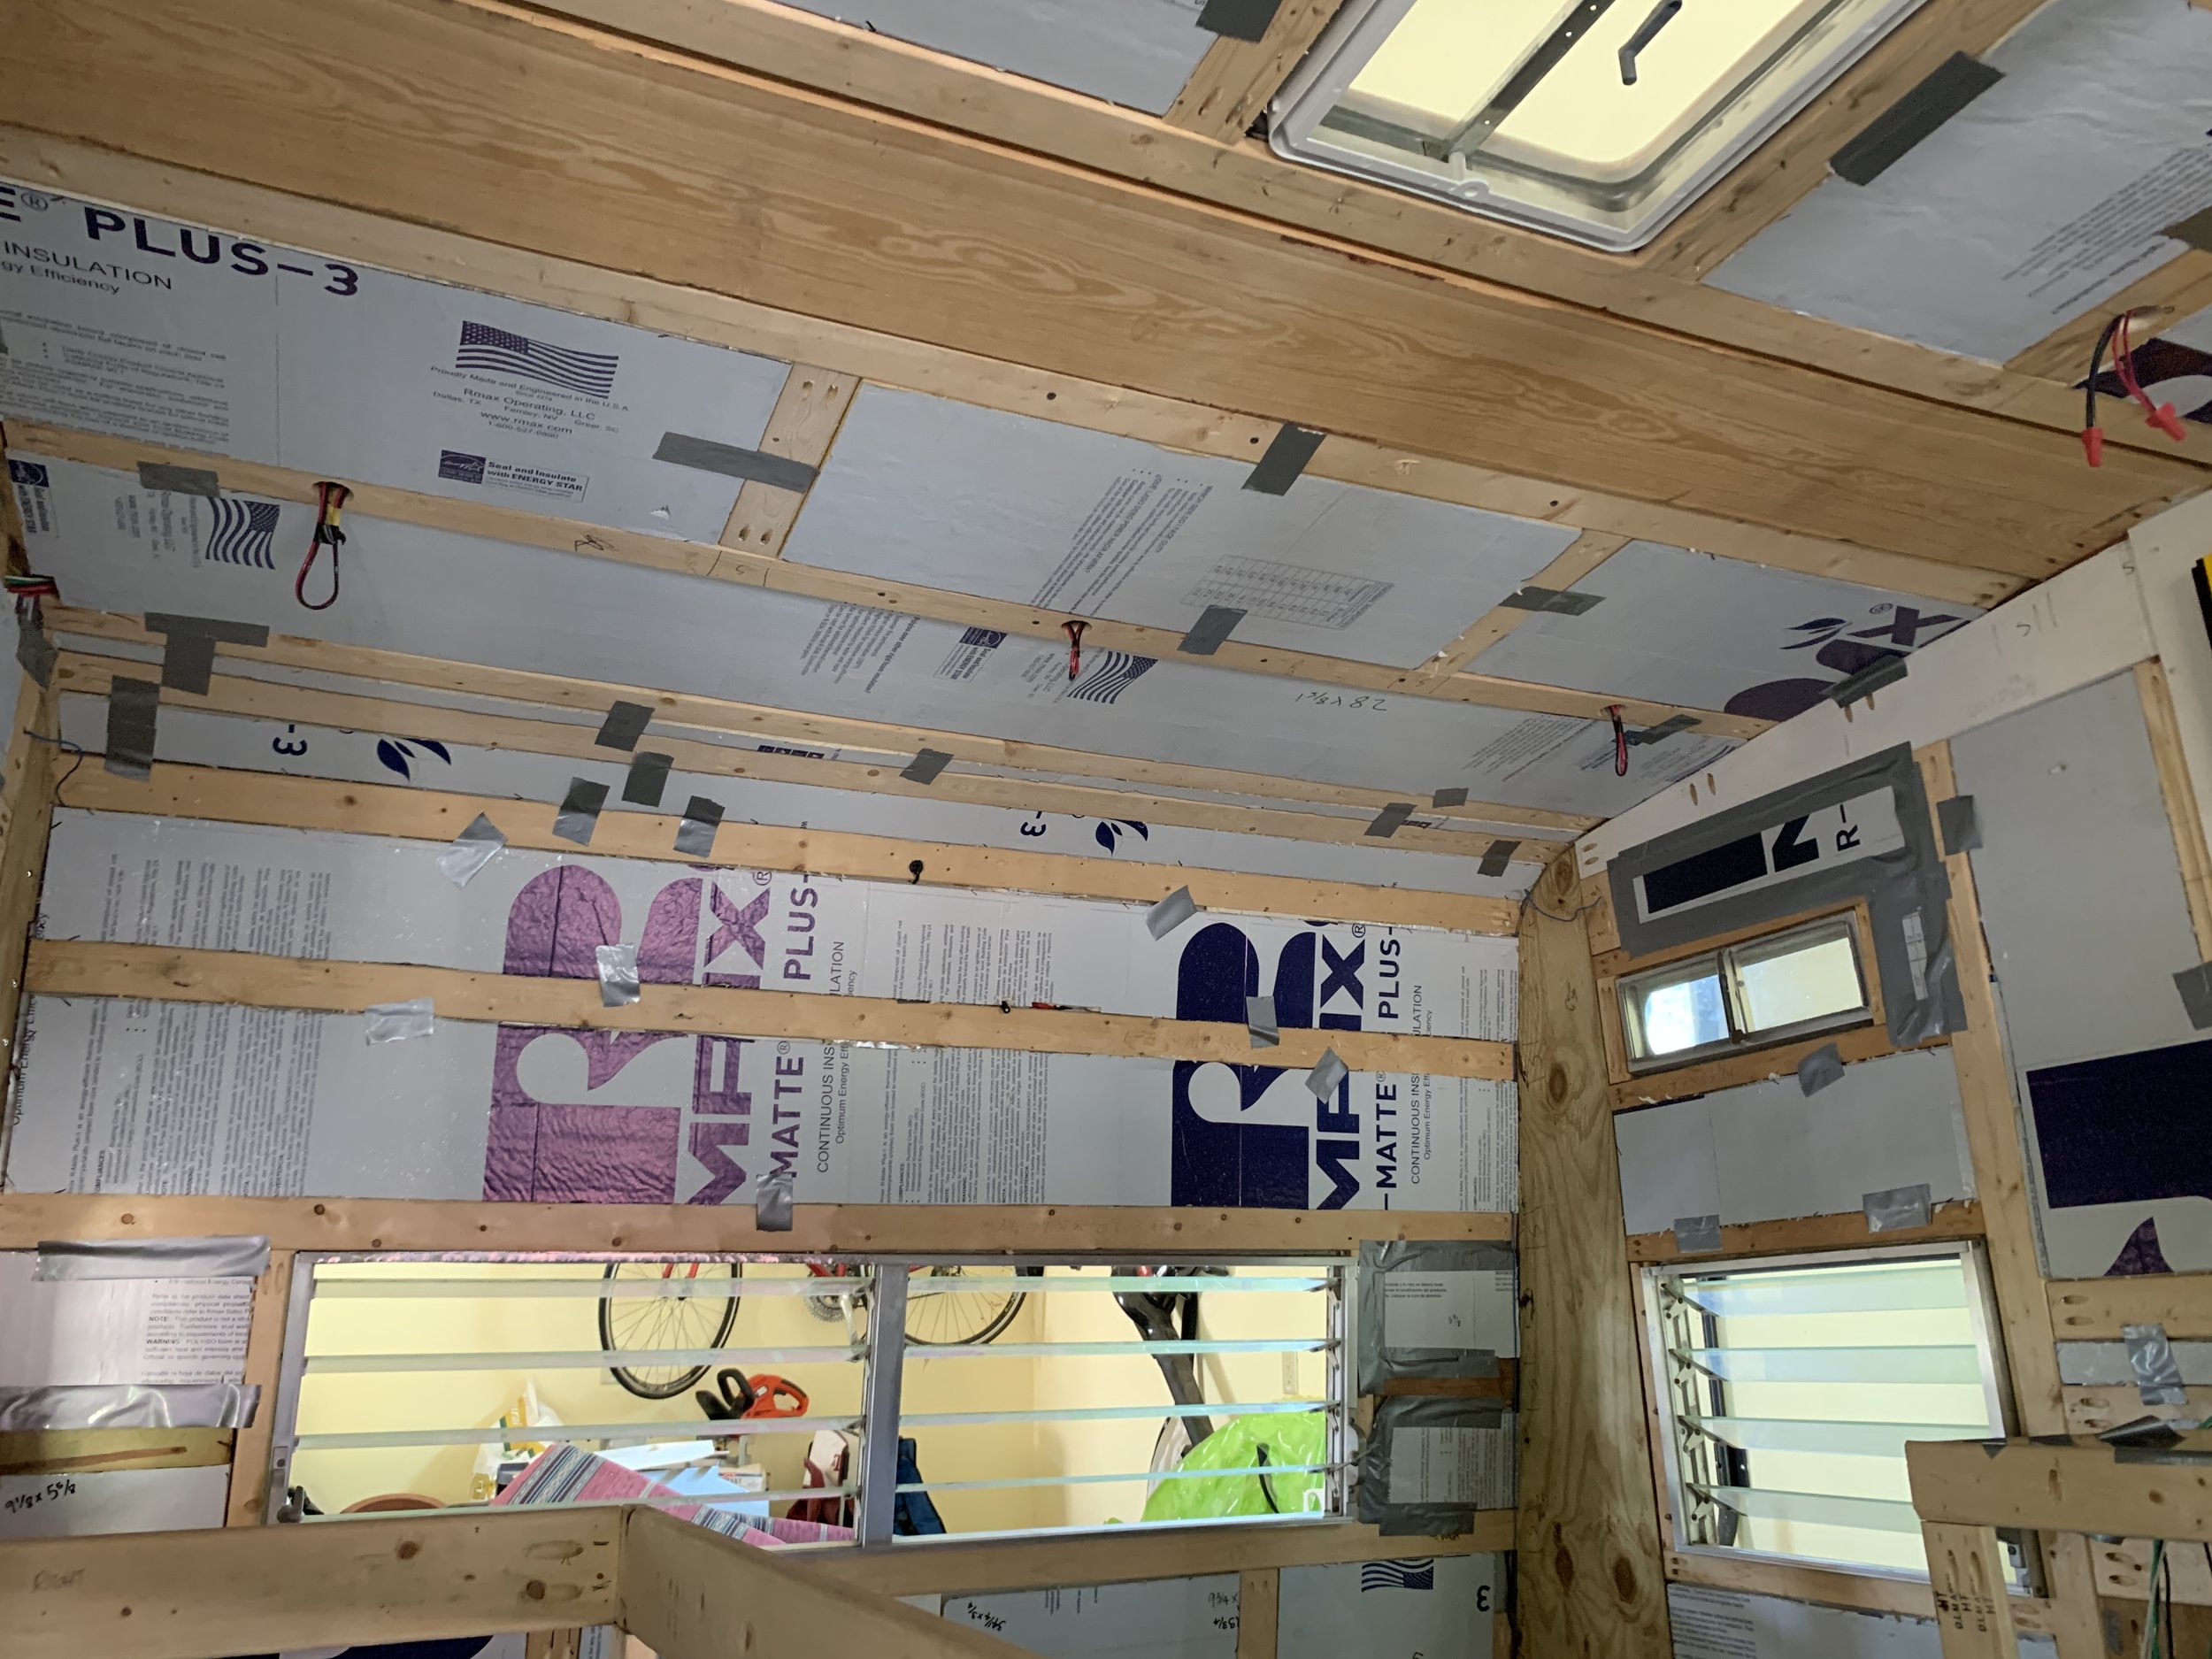 travel trailer insulation ideas